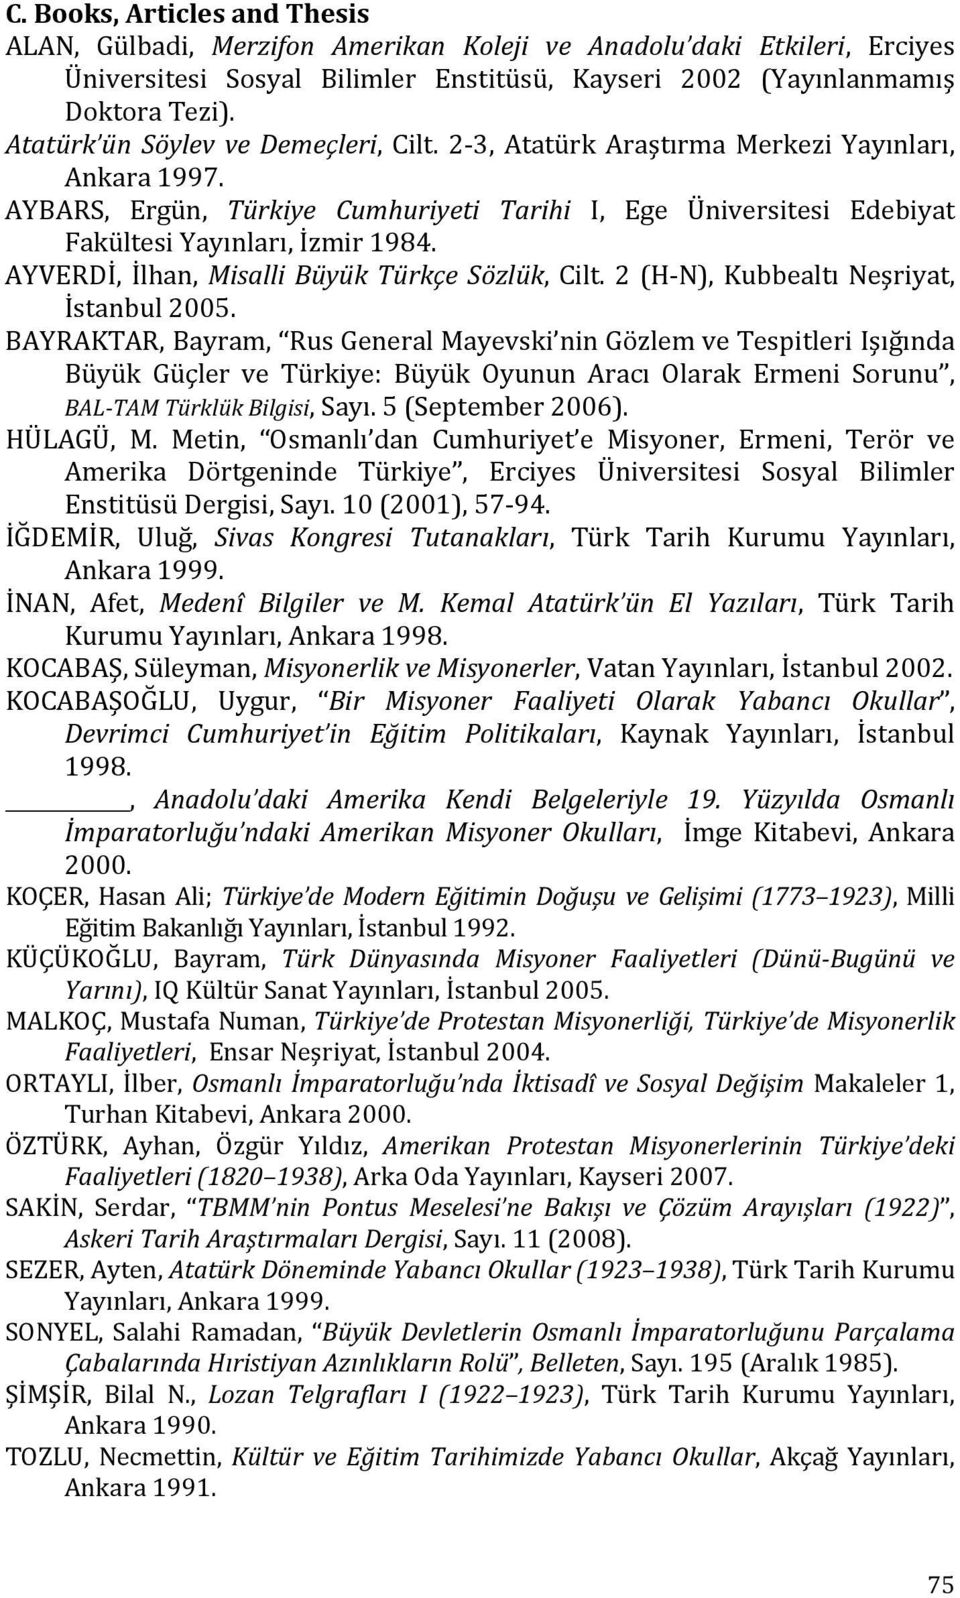 AYVERDİ, İlhan, Misalli Büyük Türkçe Sözlük, Cilt. 2 (H-N), Kubbealtı Neşriyat, İstanbul 2005.